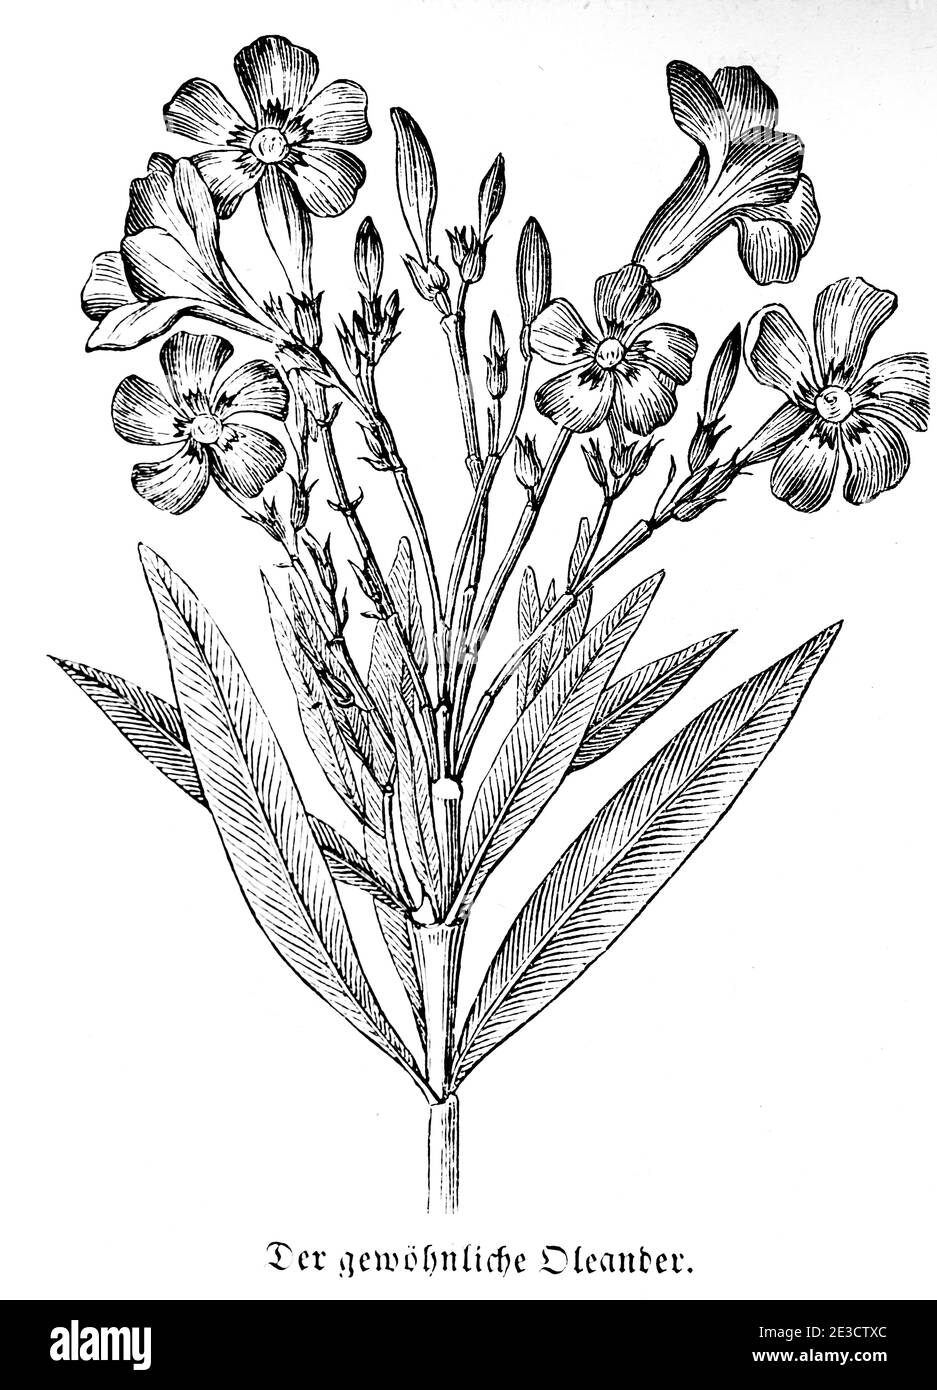 Gewöhnlicher Oleander (Nerium oleander), calendario suizo con información sobre plantas venenosas y motivos correspondientes, San Gallo Suiza 1853 Foto de stock